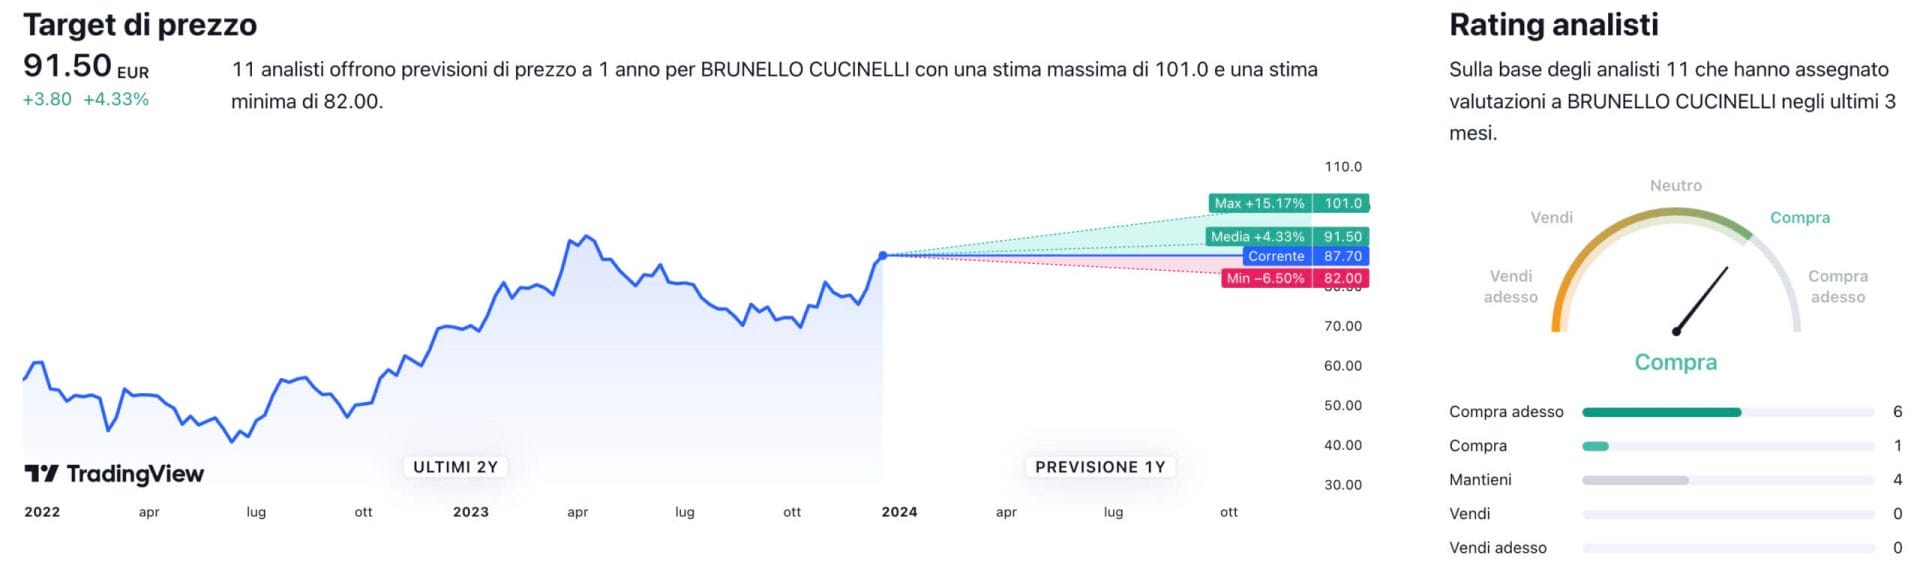 Target di prezzo a un anno e raccomandazioni degli analisti per il titolo Brunello Cucinelli